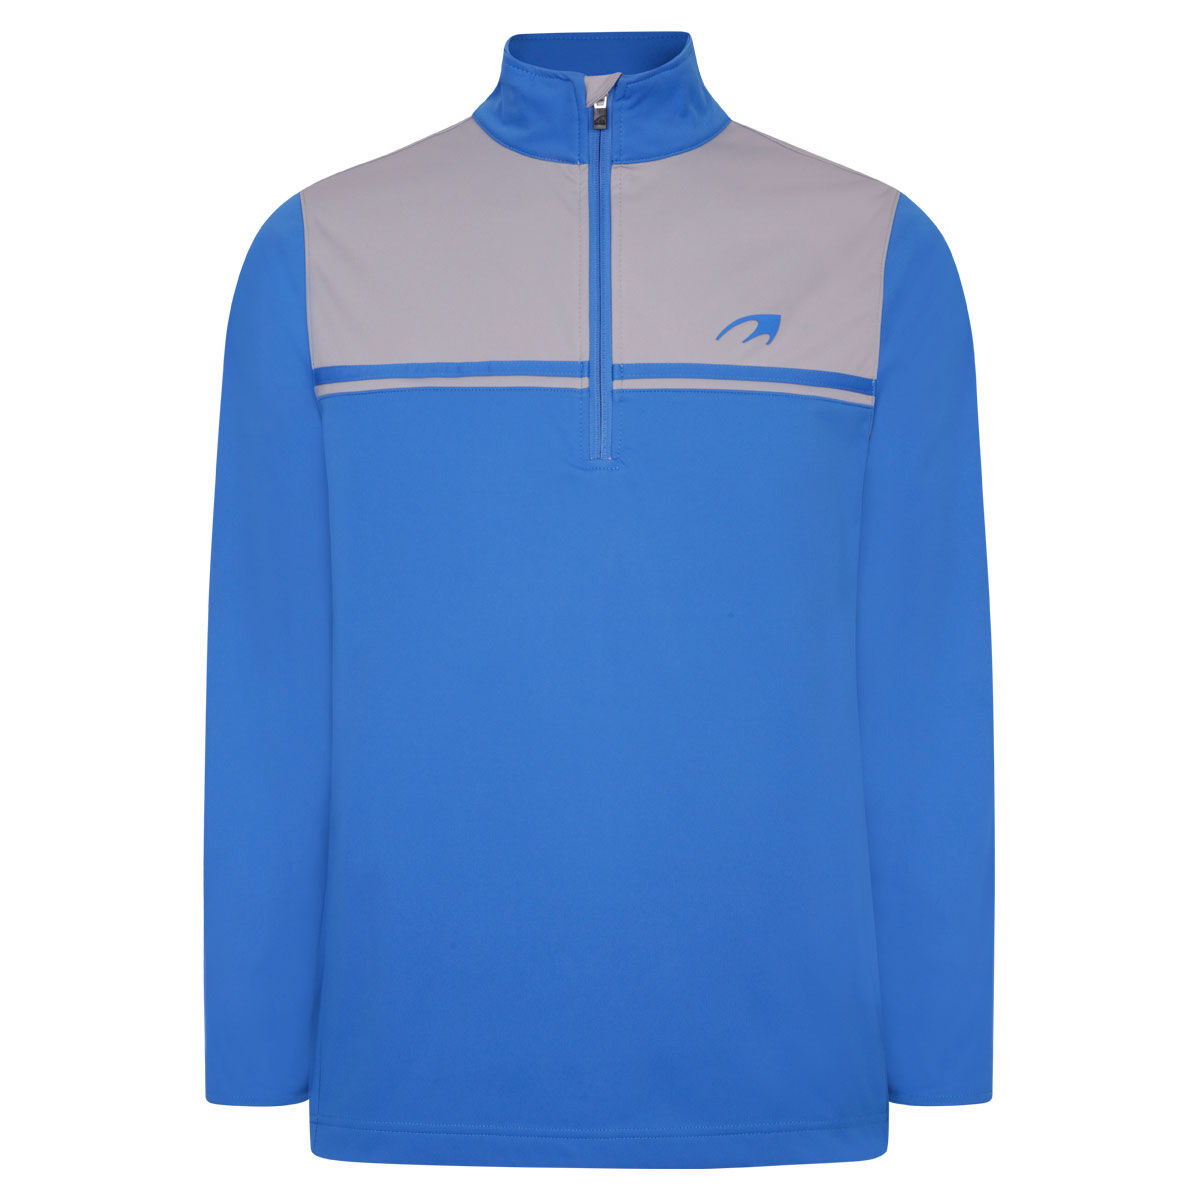 Vêtement intermédiaire Benross Pro Shell X, homme, Petit, Bleu/Gris | Online Golf